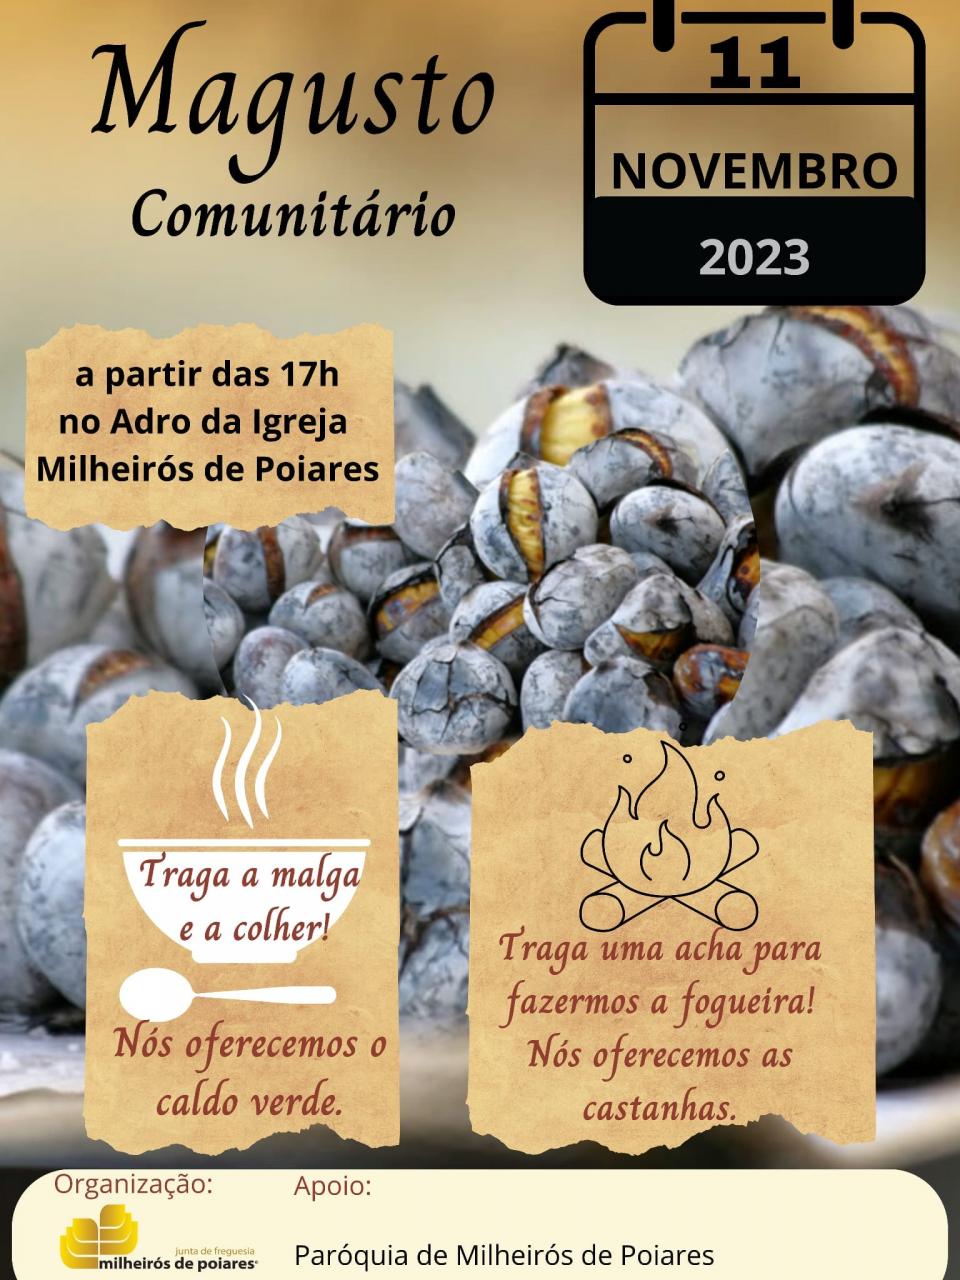 "MAGUSTO COMUNITÁRIO" 2023 - 17:00H